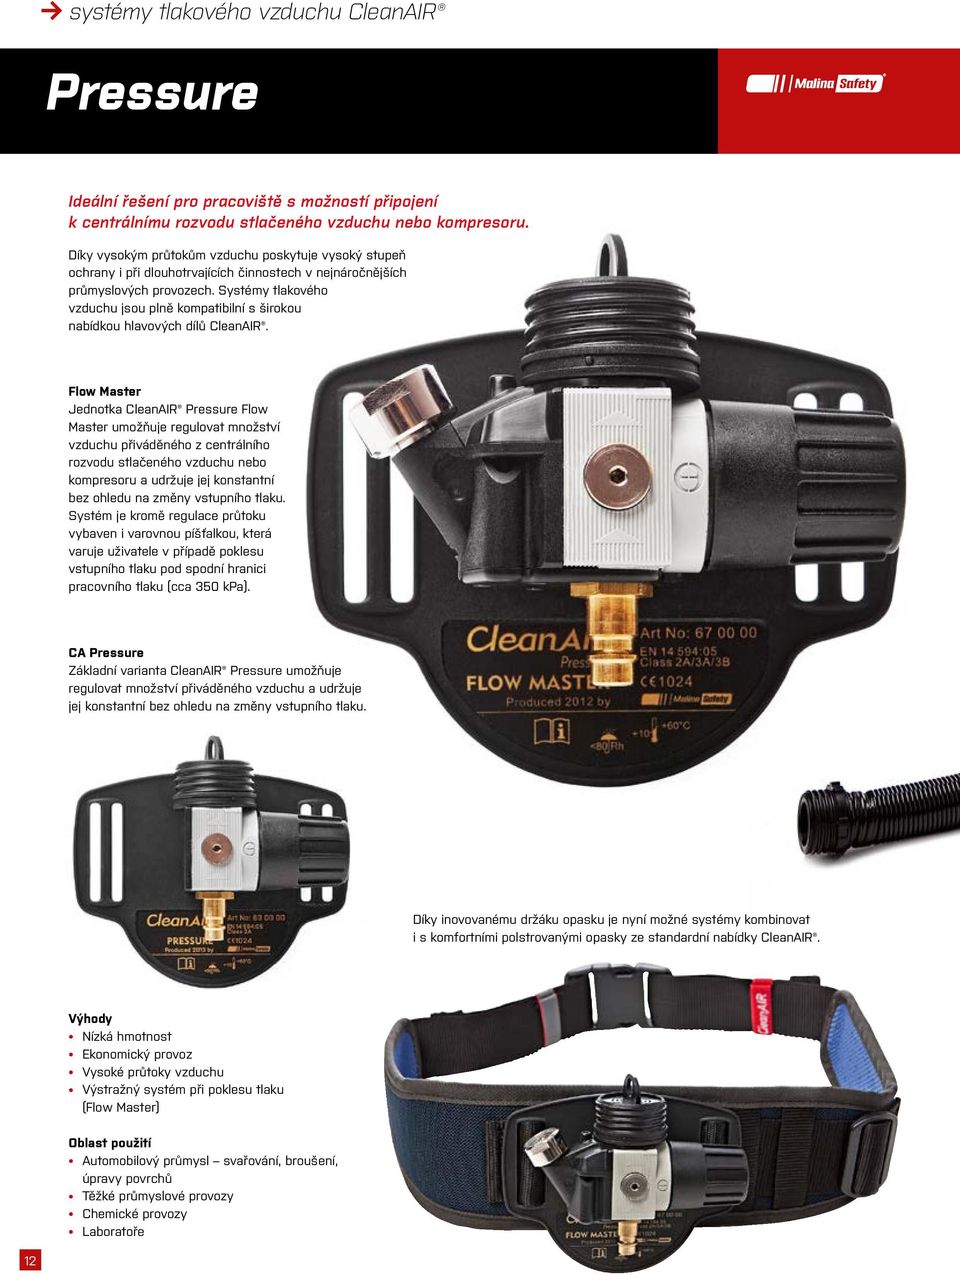 Systémy tlakového vzduchu jsou plně kompatibilní s širokou nabídkou hlavových dílů CleanAIR.